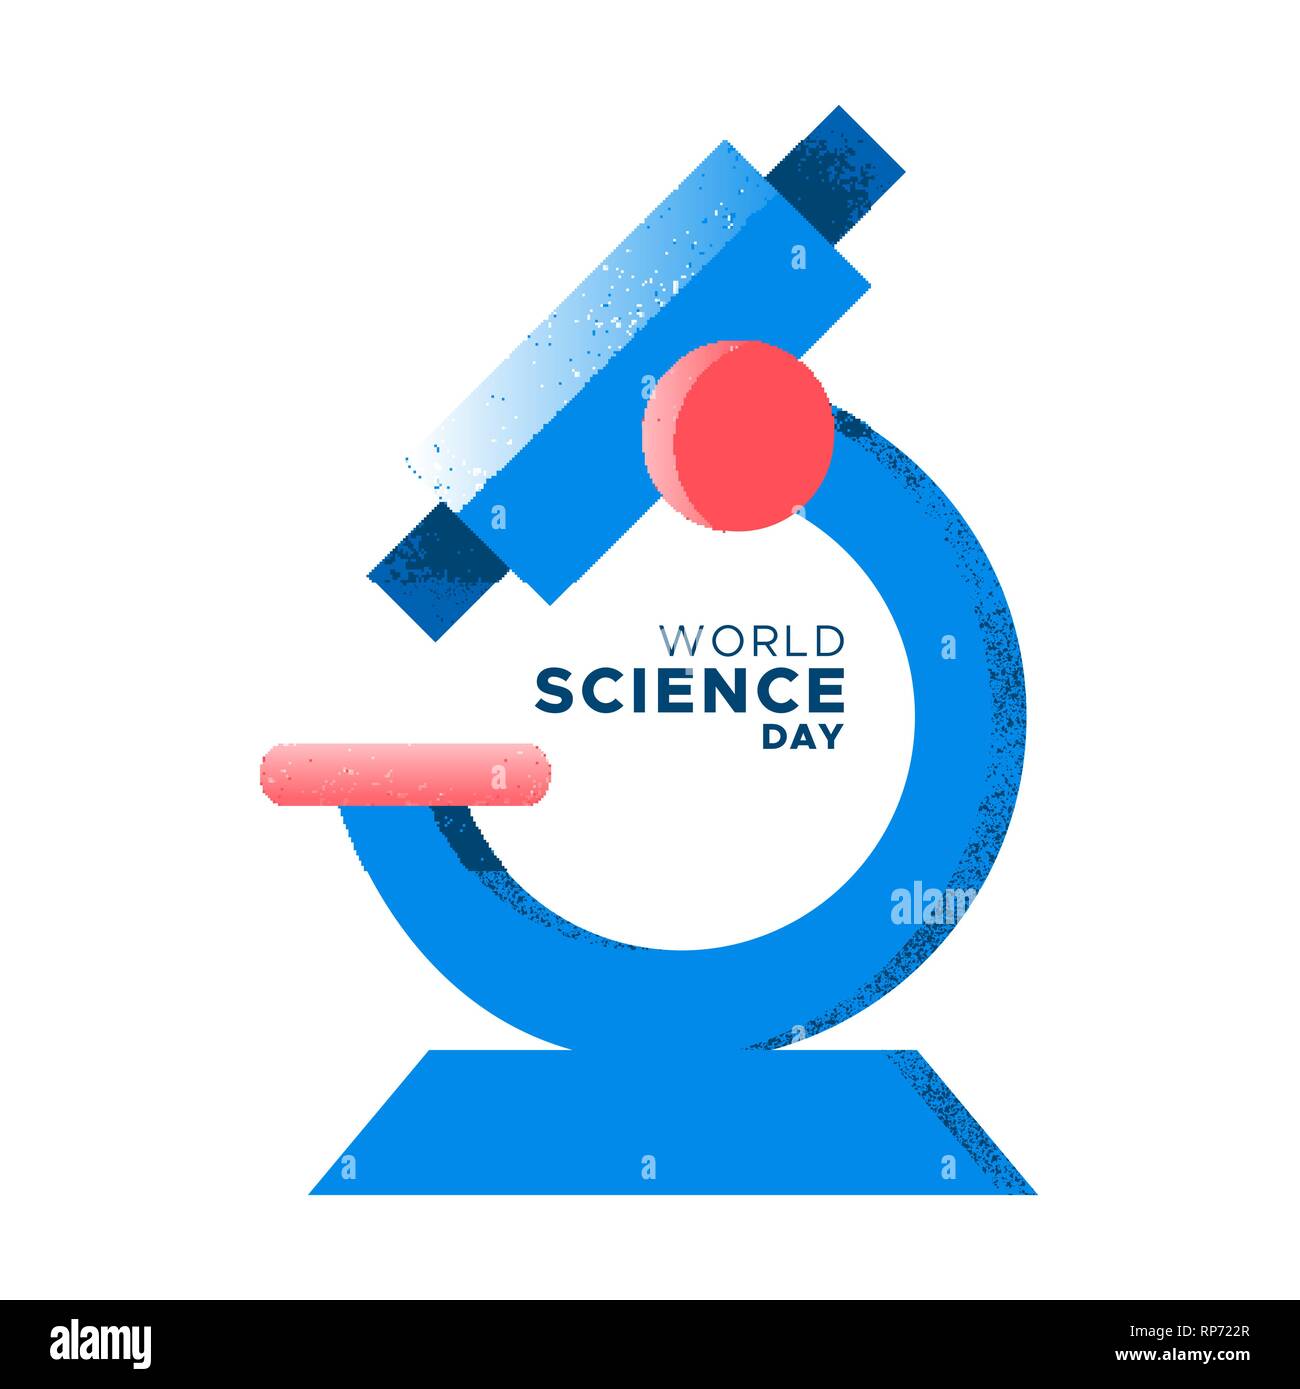 Journée mondiale de la science illustration. Outil à main tiré Microscope texture grunge style pour concept de recherche en médecine, chimie, biologie et biochimiste Illustration de Vecteur